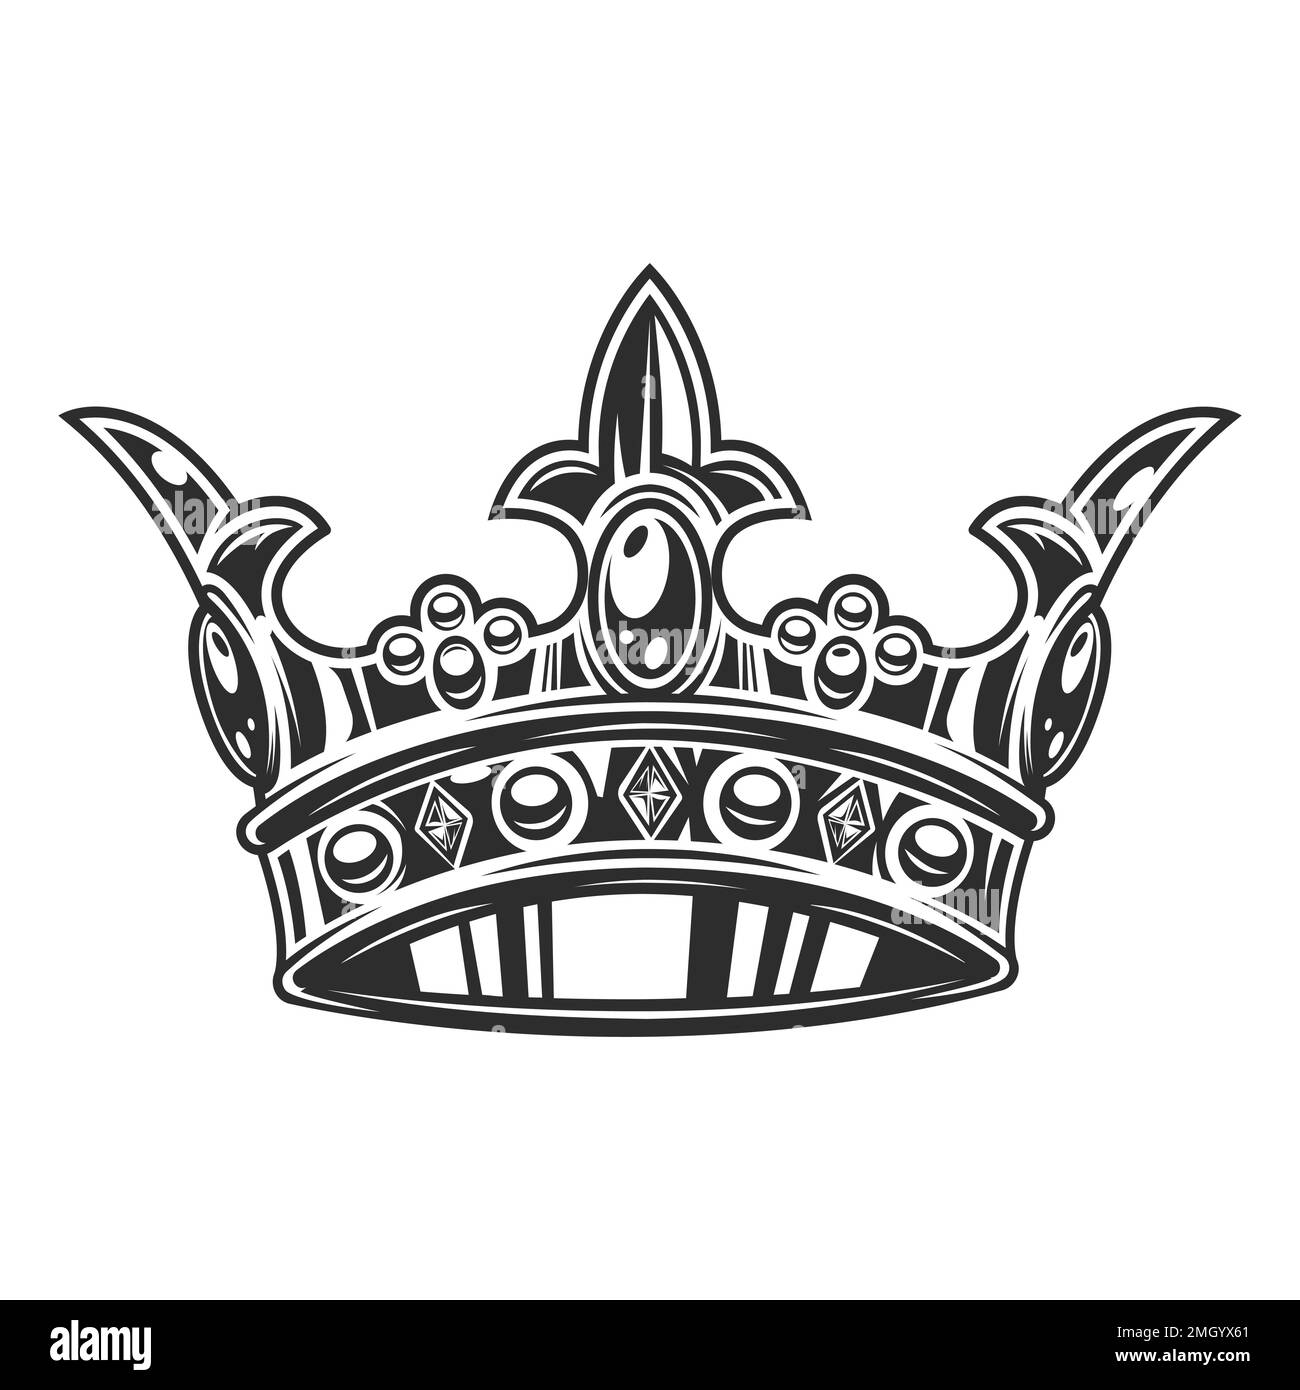 Vektor der Kronendarstellung auf weißem Hintergrund isoliert. Klassische Krönung, elegante Queen- oder King-Krone gezeichnet. Königliche kaiserliche Krönungssymbole Stock Vektor